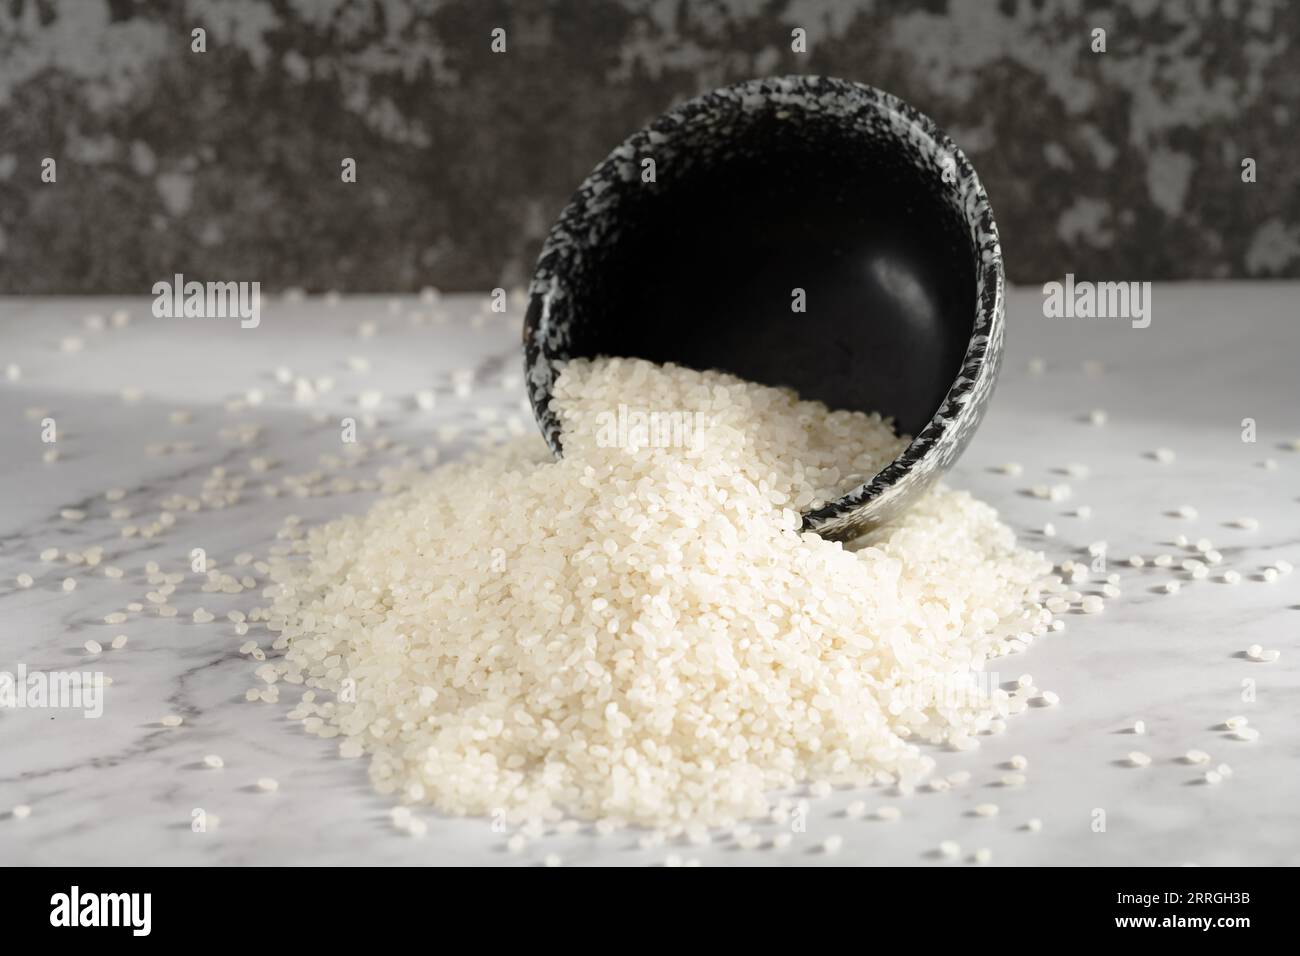 riz biologique cru frais dans un gobelet en plastique Banque D'Images